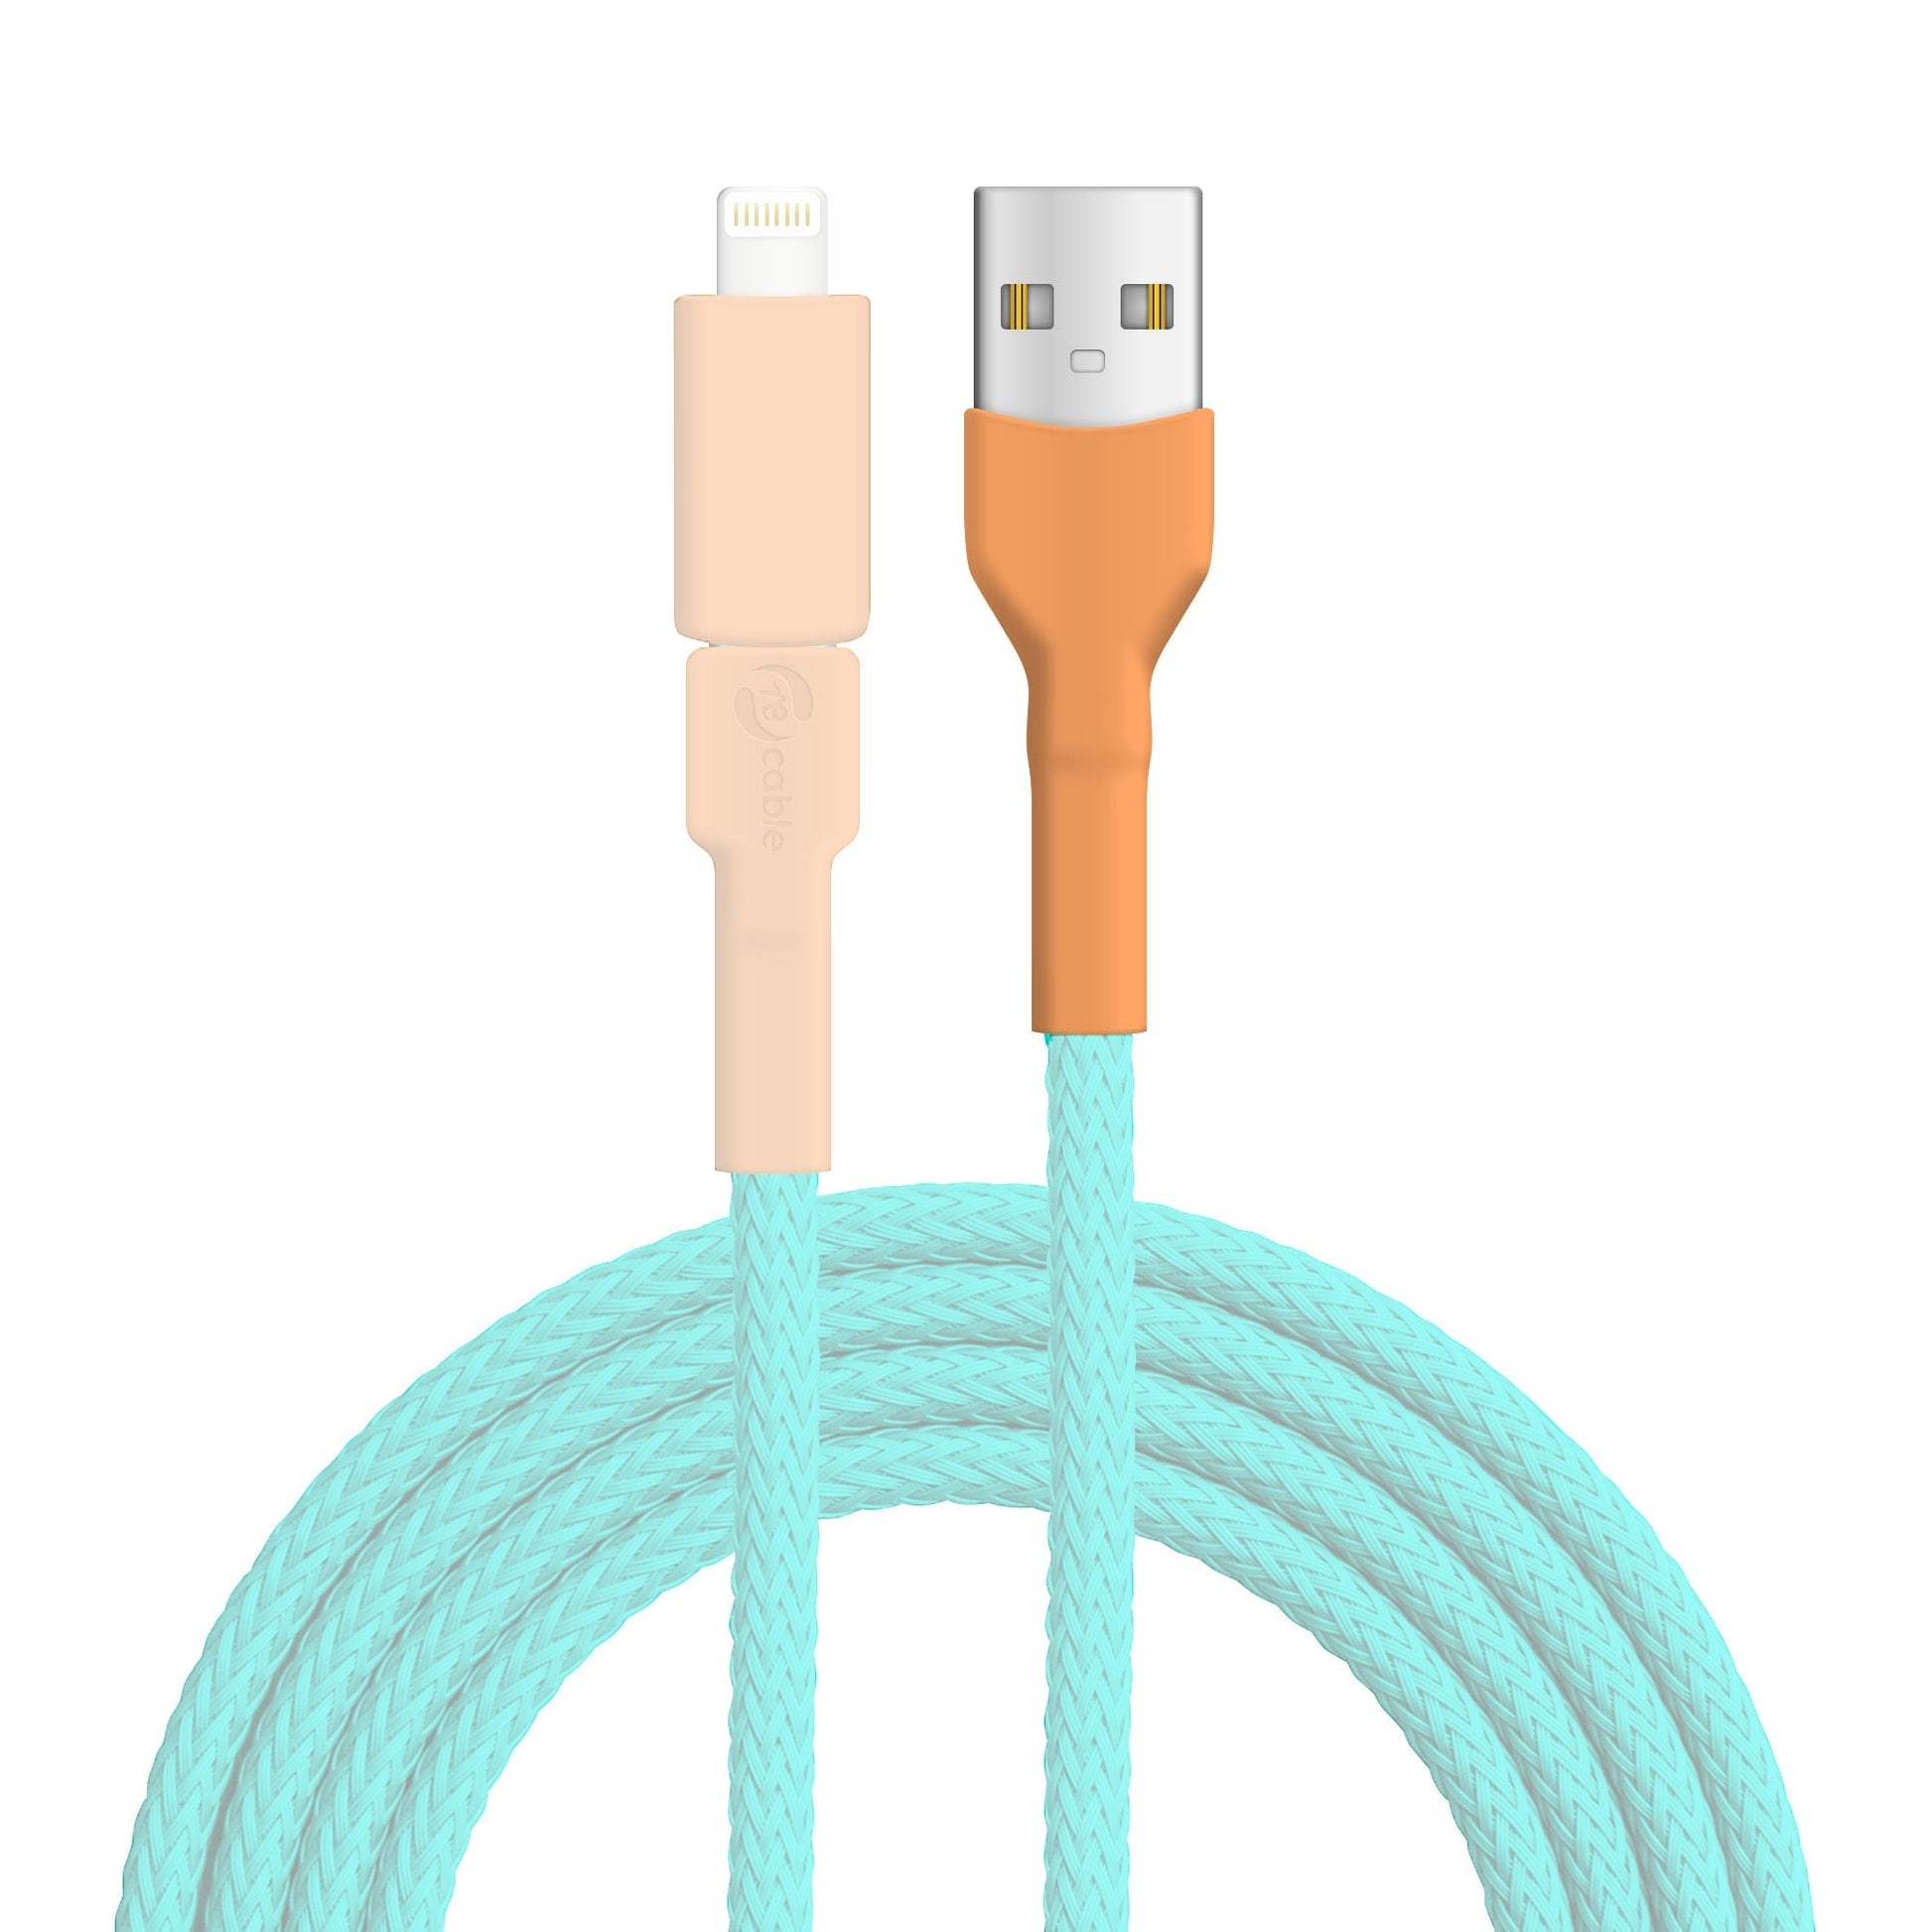 USB A Stecker zur Erkennung des Ersatzteils hervorgehoben, das Kabel, der Micro USB Stecker und der Lightning (iPhone) Adapter  sind ausgeblendet